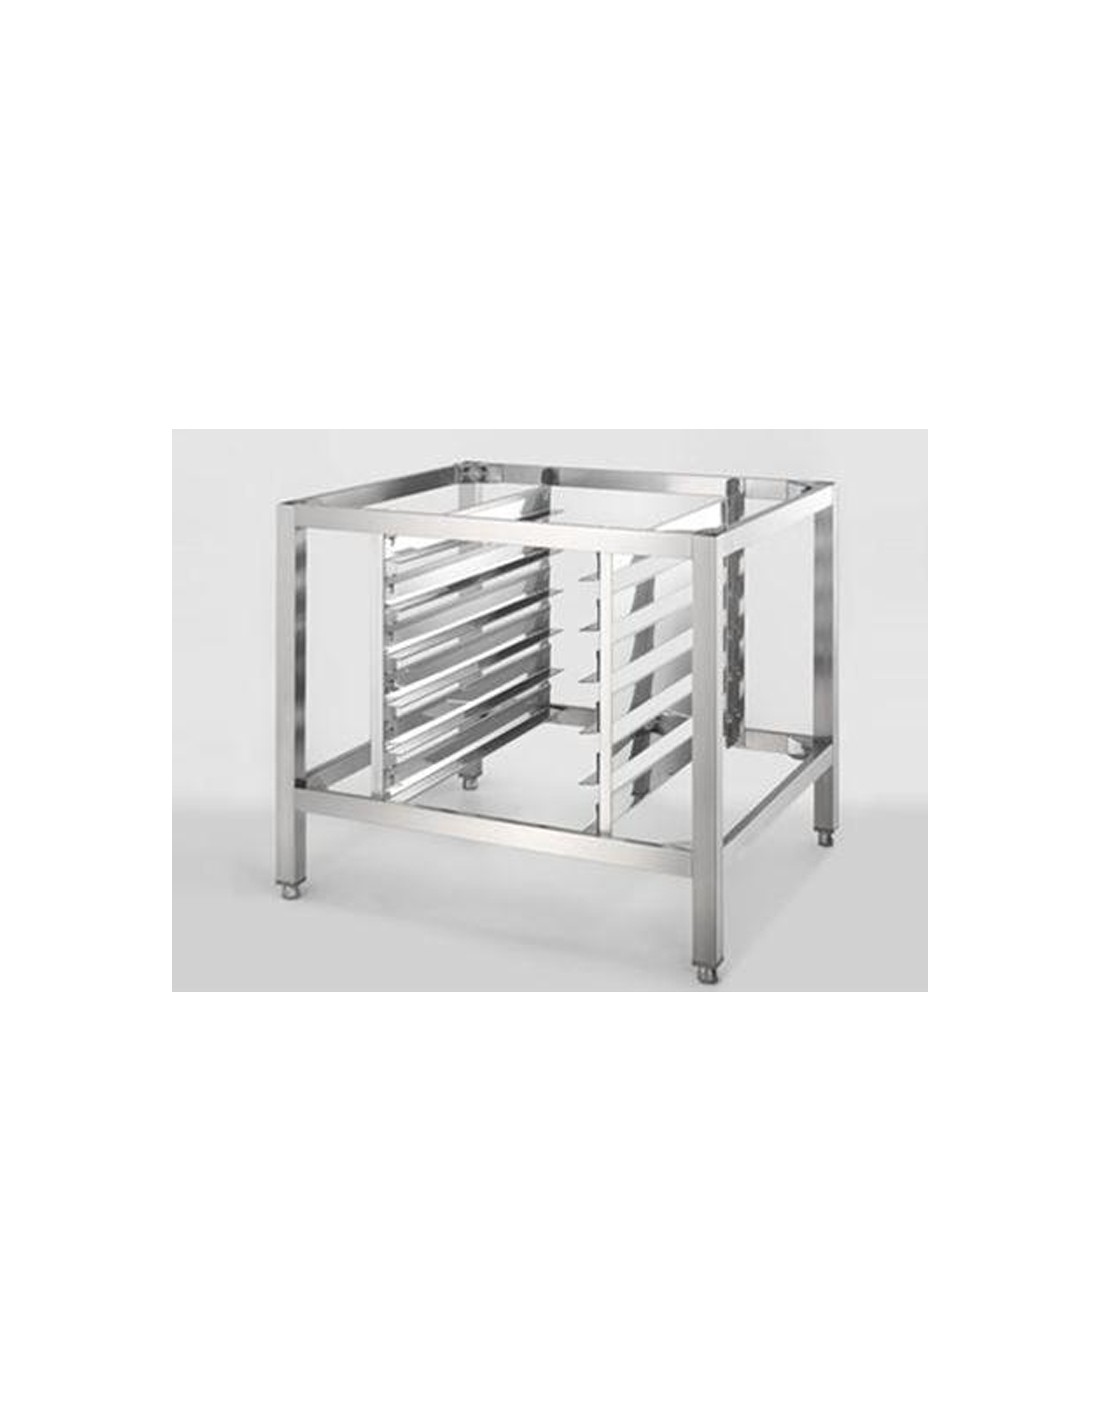 Mesa de acero inoxidable + estantes GN 2/1 h 68 cm - Capacidad teglie n. 5